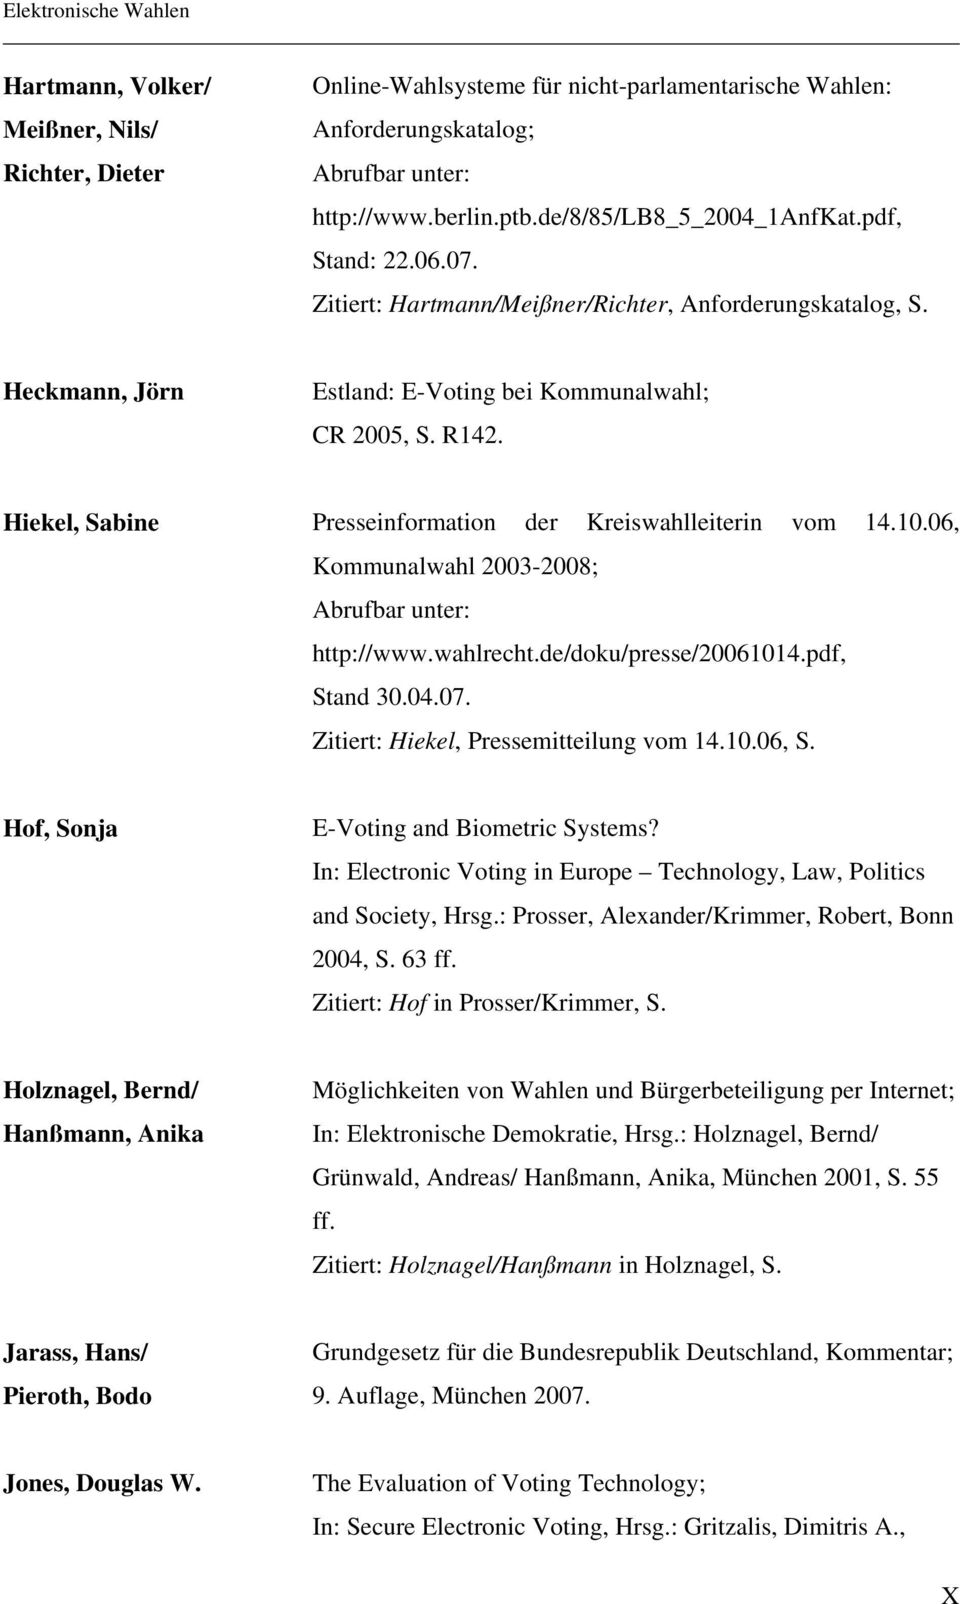 Hiekel, Sabine Presseinformation der Kreiswahlleiterin vom 14.10.06, Kommunalwahl 2003-2008; Abrufbar unter: http://www.wahlrecht.de/doku/presse/20061014.pdf, Stand 30.04.07.